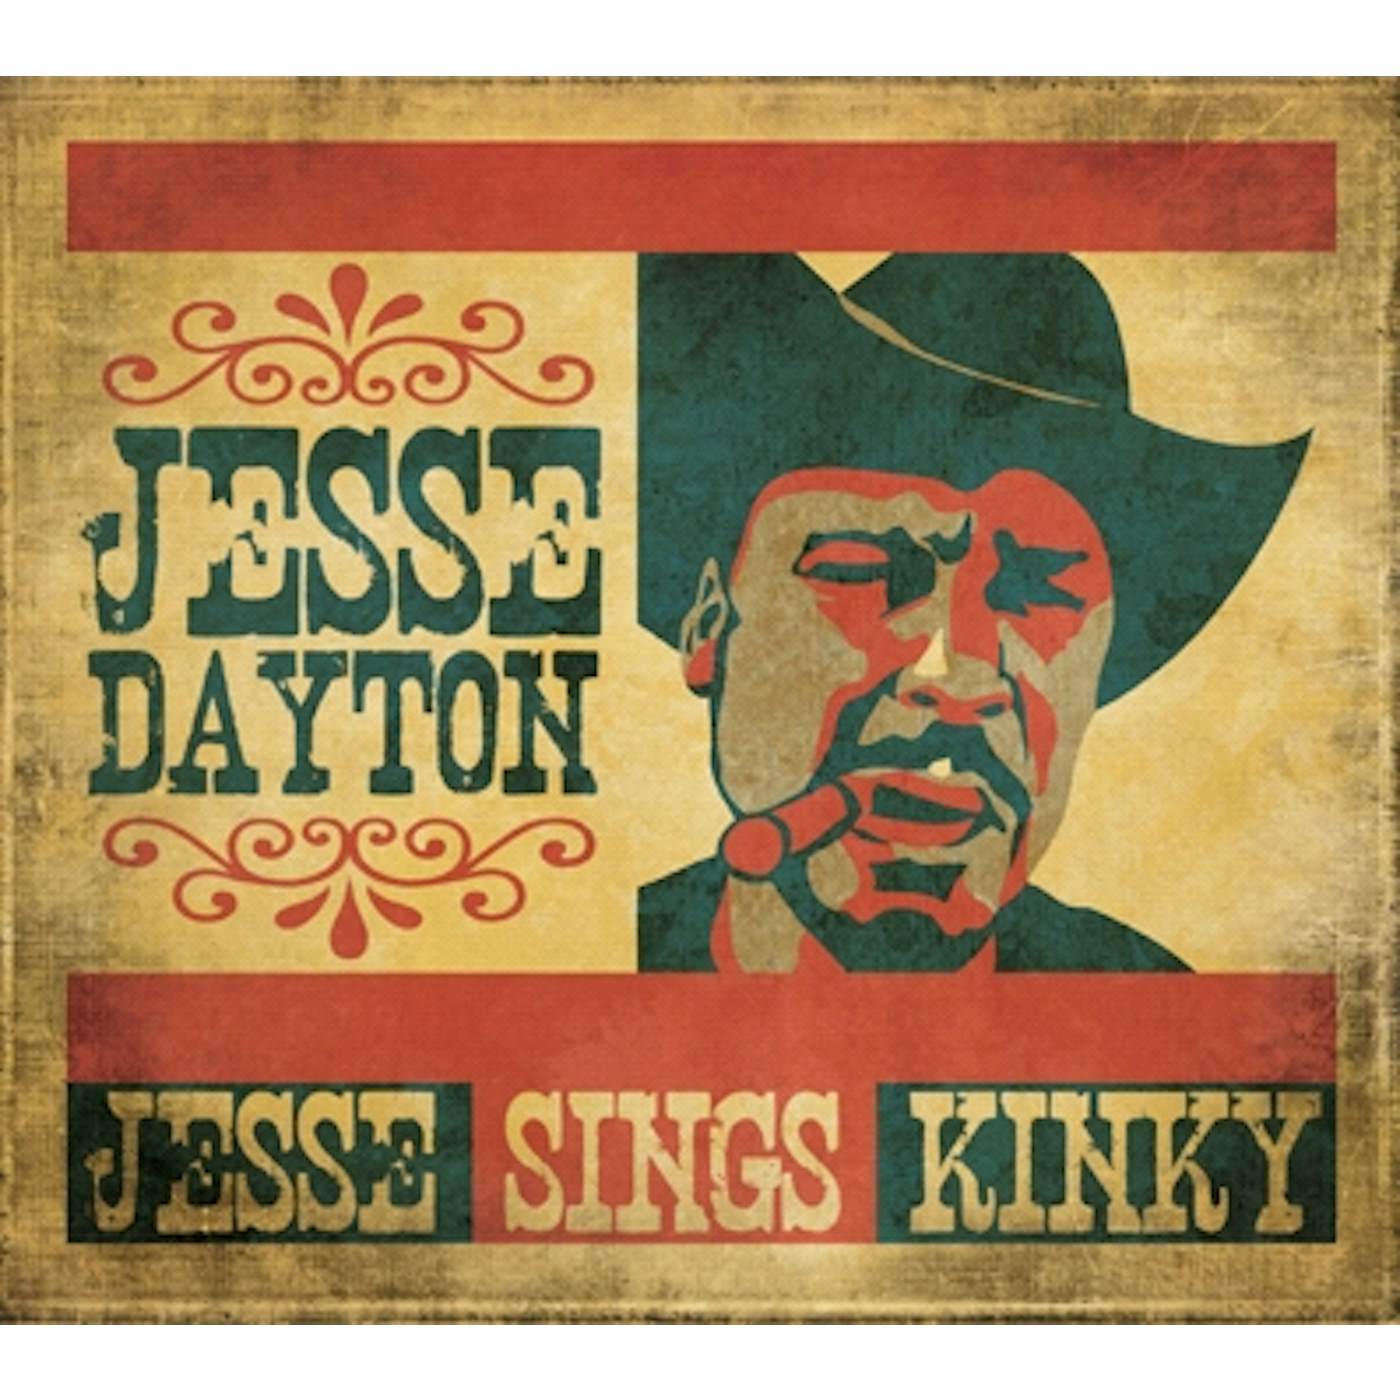 Jesse Dayton JESSE SINGS KINKY CD